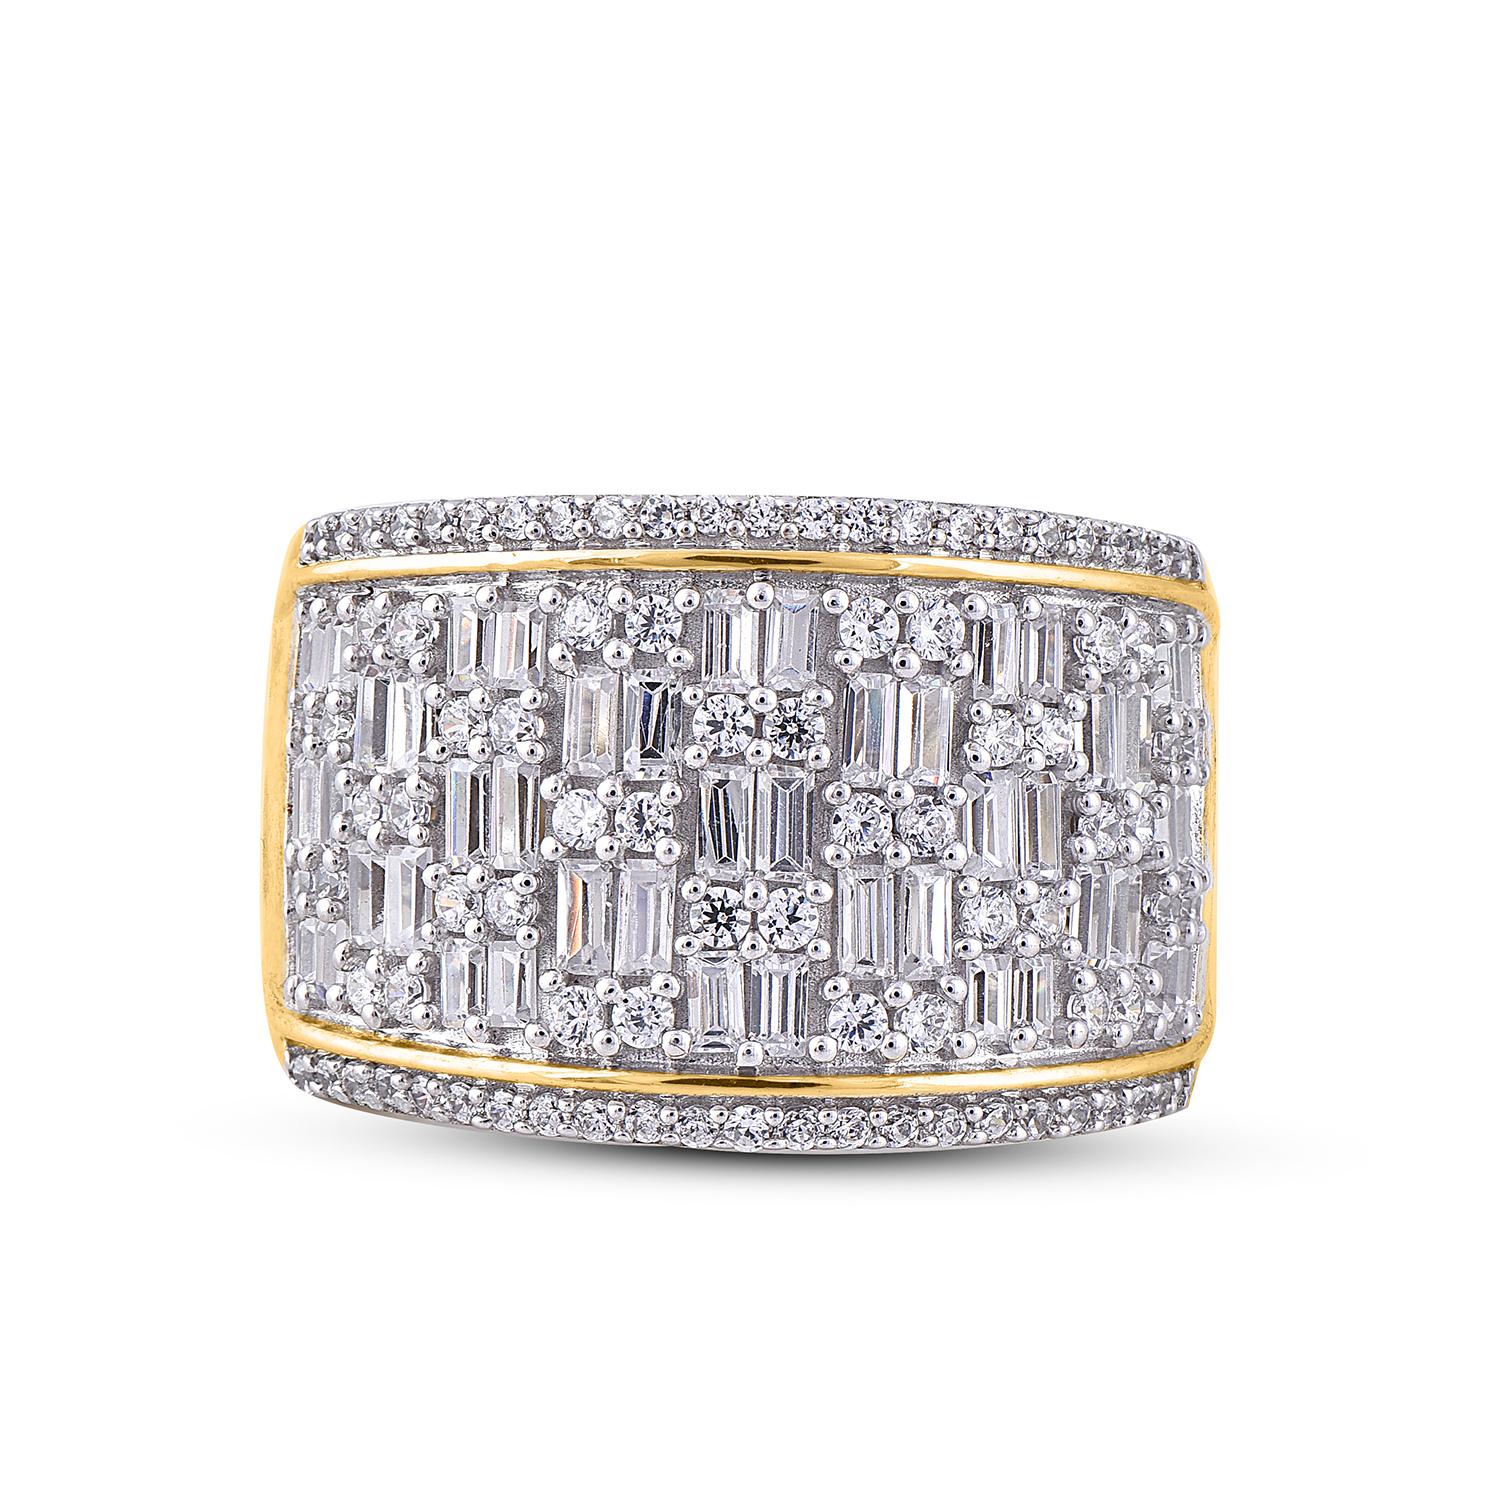 Dieses wahrhaft exquisite diamantene Verlobungsband wird wegen seiner klassischen Schönheit und Eleganz bewundert werden. Das Gesamtgewicht der Diamanten 1,50 Karat, Farbe H-I, Reinheit I2. Dieser Ring ist wunderschön in 14K Gelbgold gefertigt und